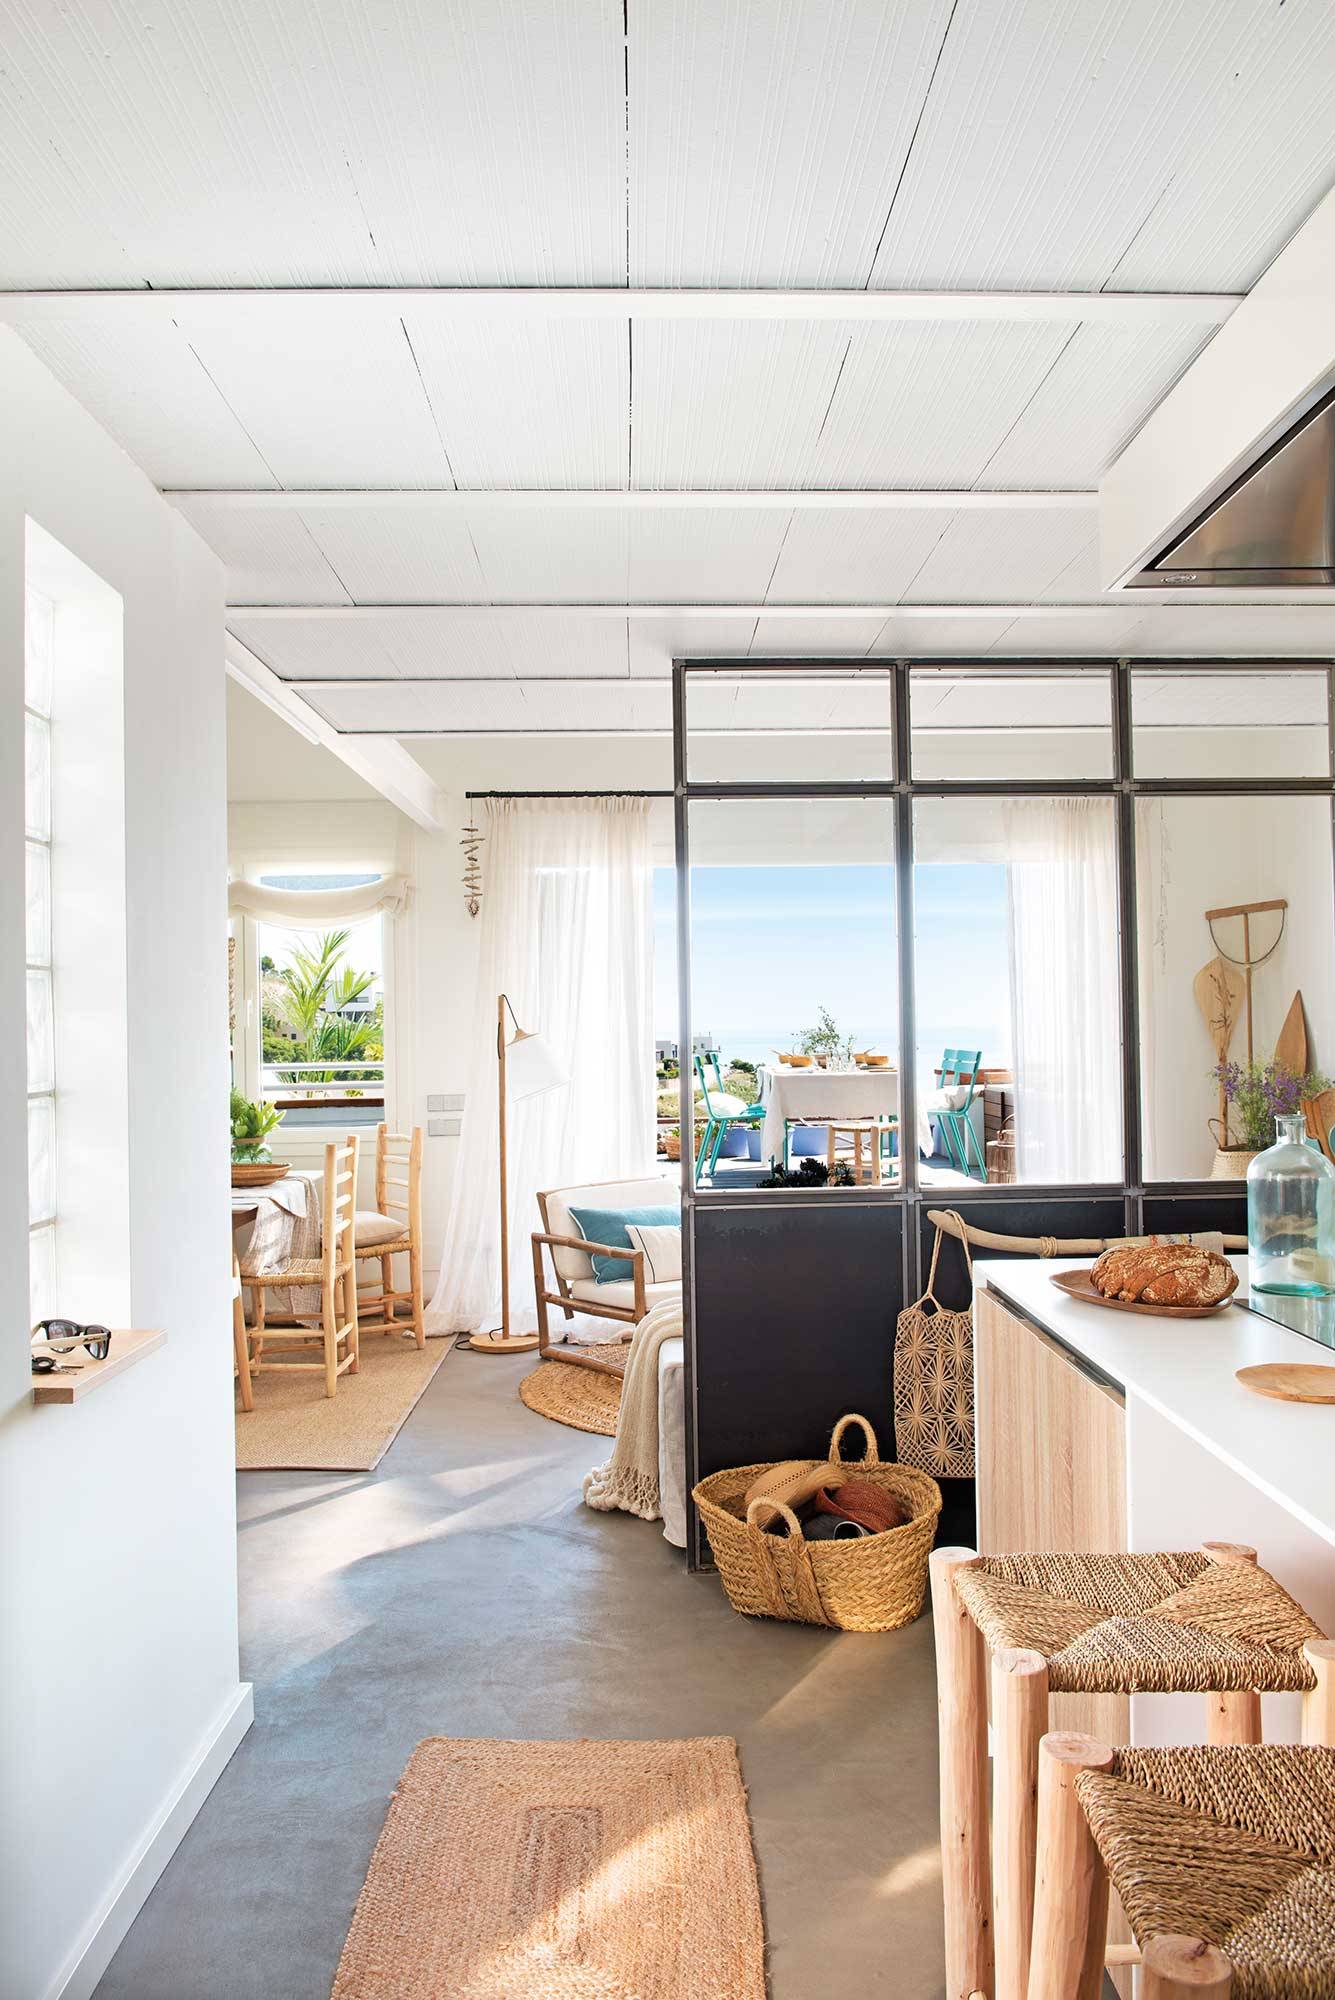 Hacer la cena hogar Encogimiento Separar ambientes: 33 ideas prácticas y decorativas